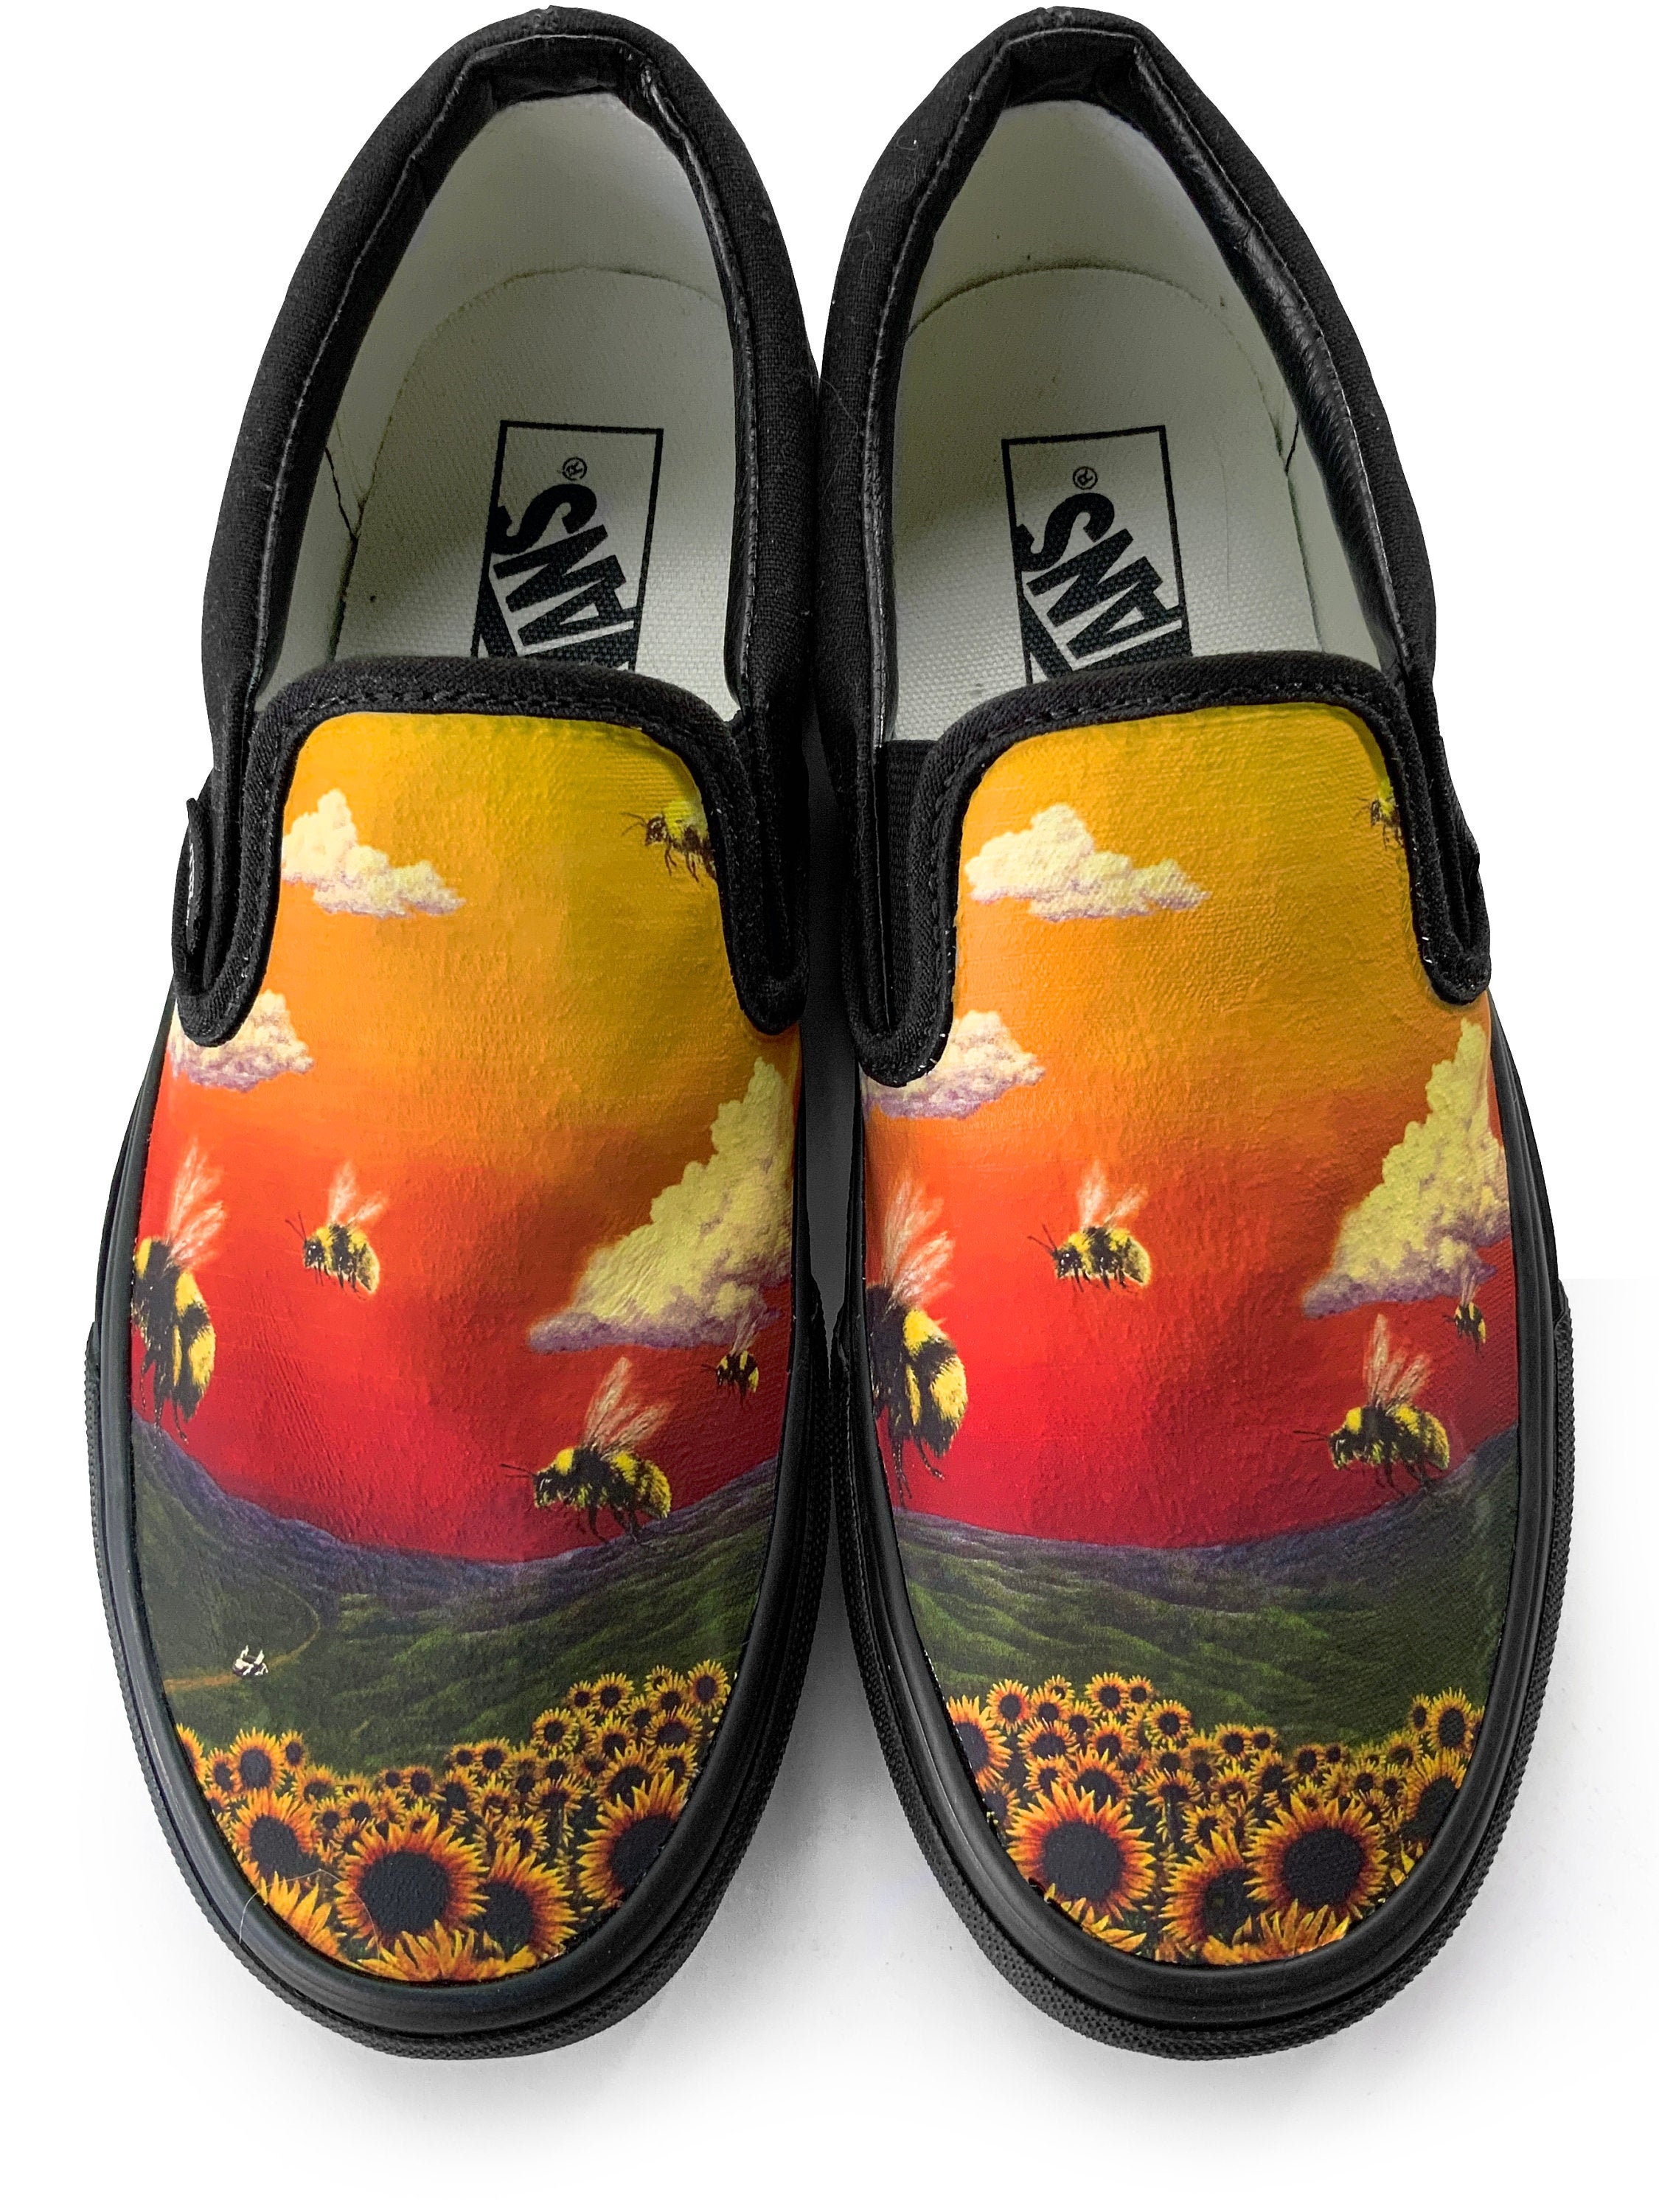 Flower Boy Slip on Custom Vans Brand Shoes - Etsy